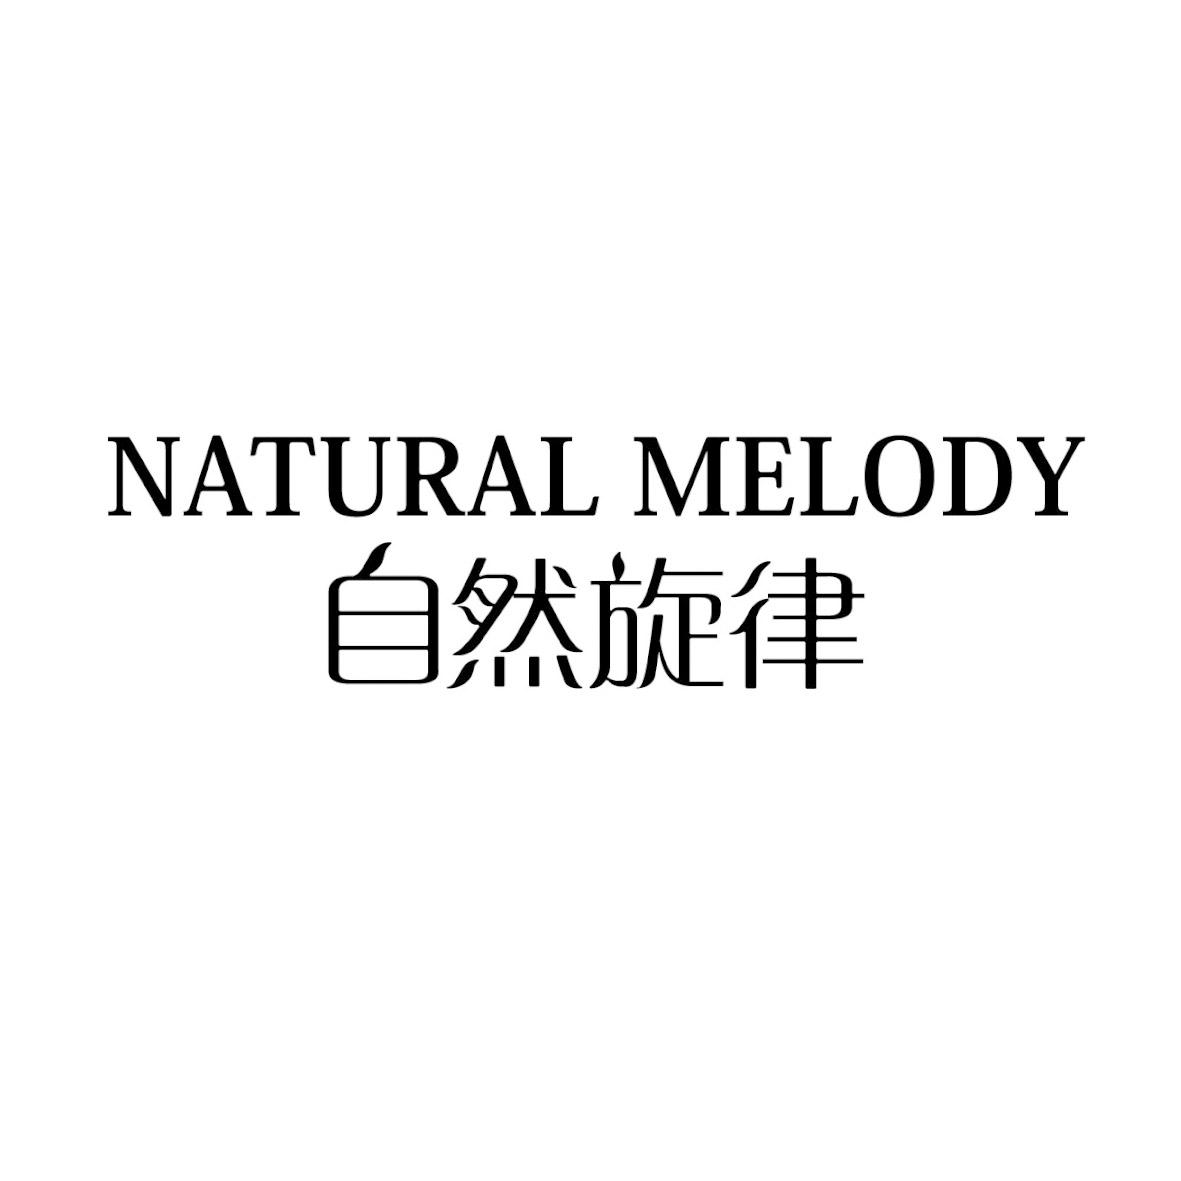 自然旋律logo图片